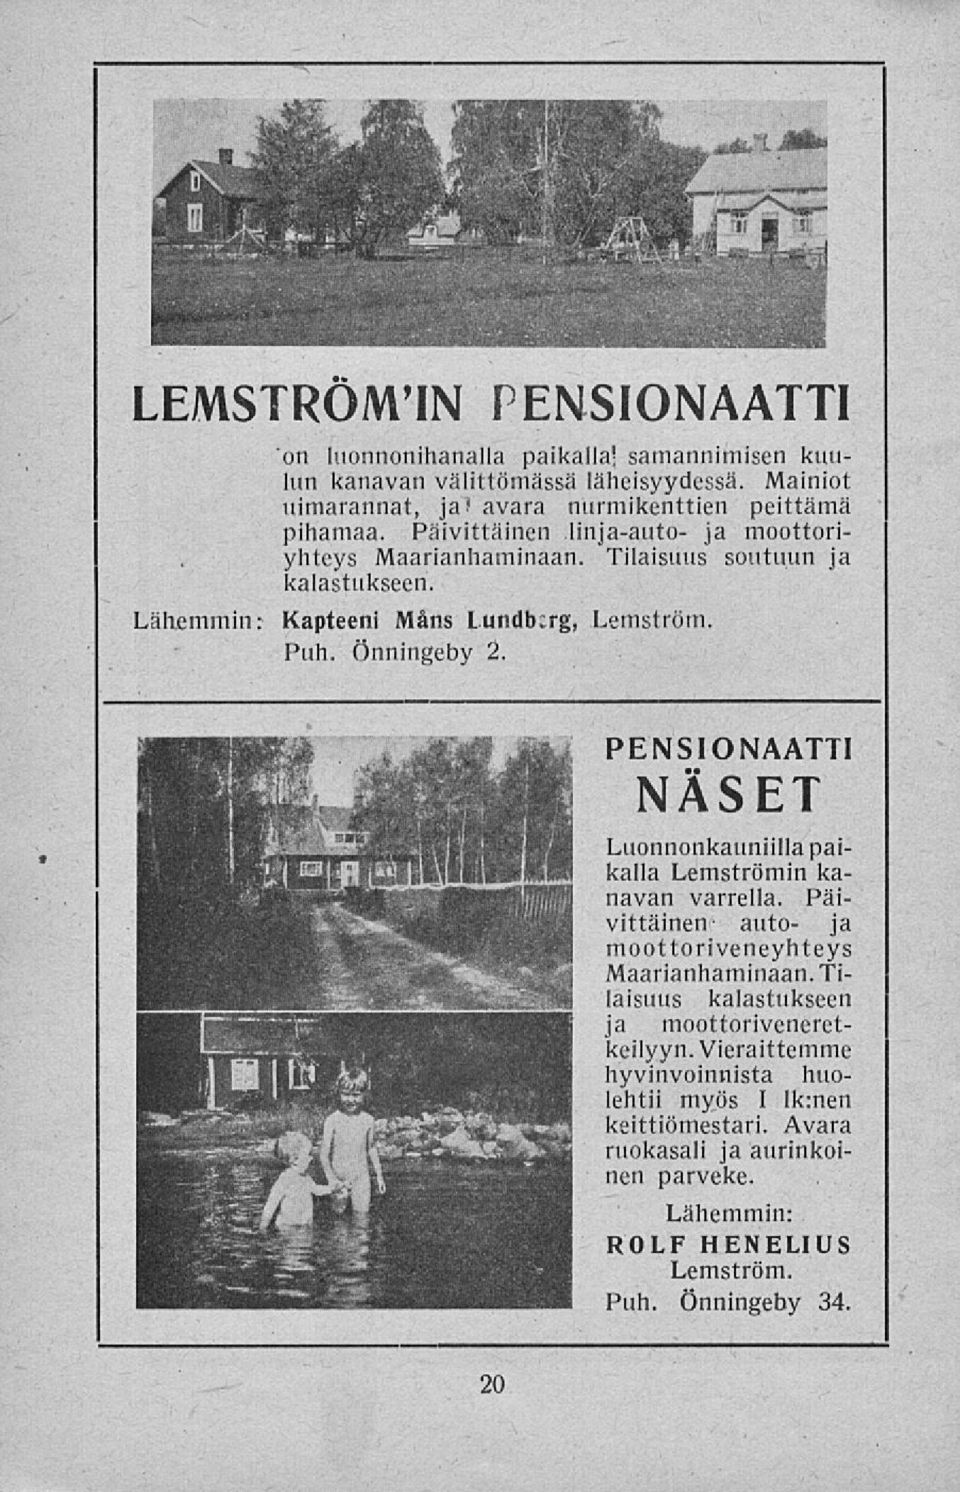 Lähemmin: Kapteeni Mans Lundberg, Lemström, Puh. Önningeby 2. PENSIONAATTI NÄSET Luonnonkauniillapaikalla Lemströmin kanavan varrella.